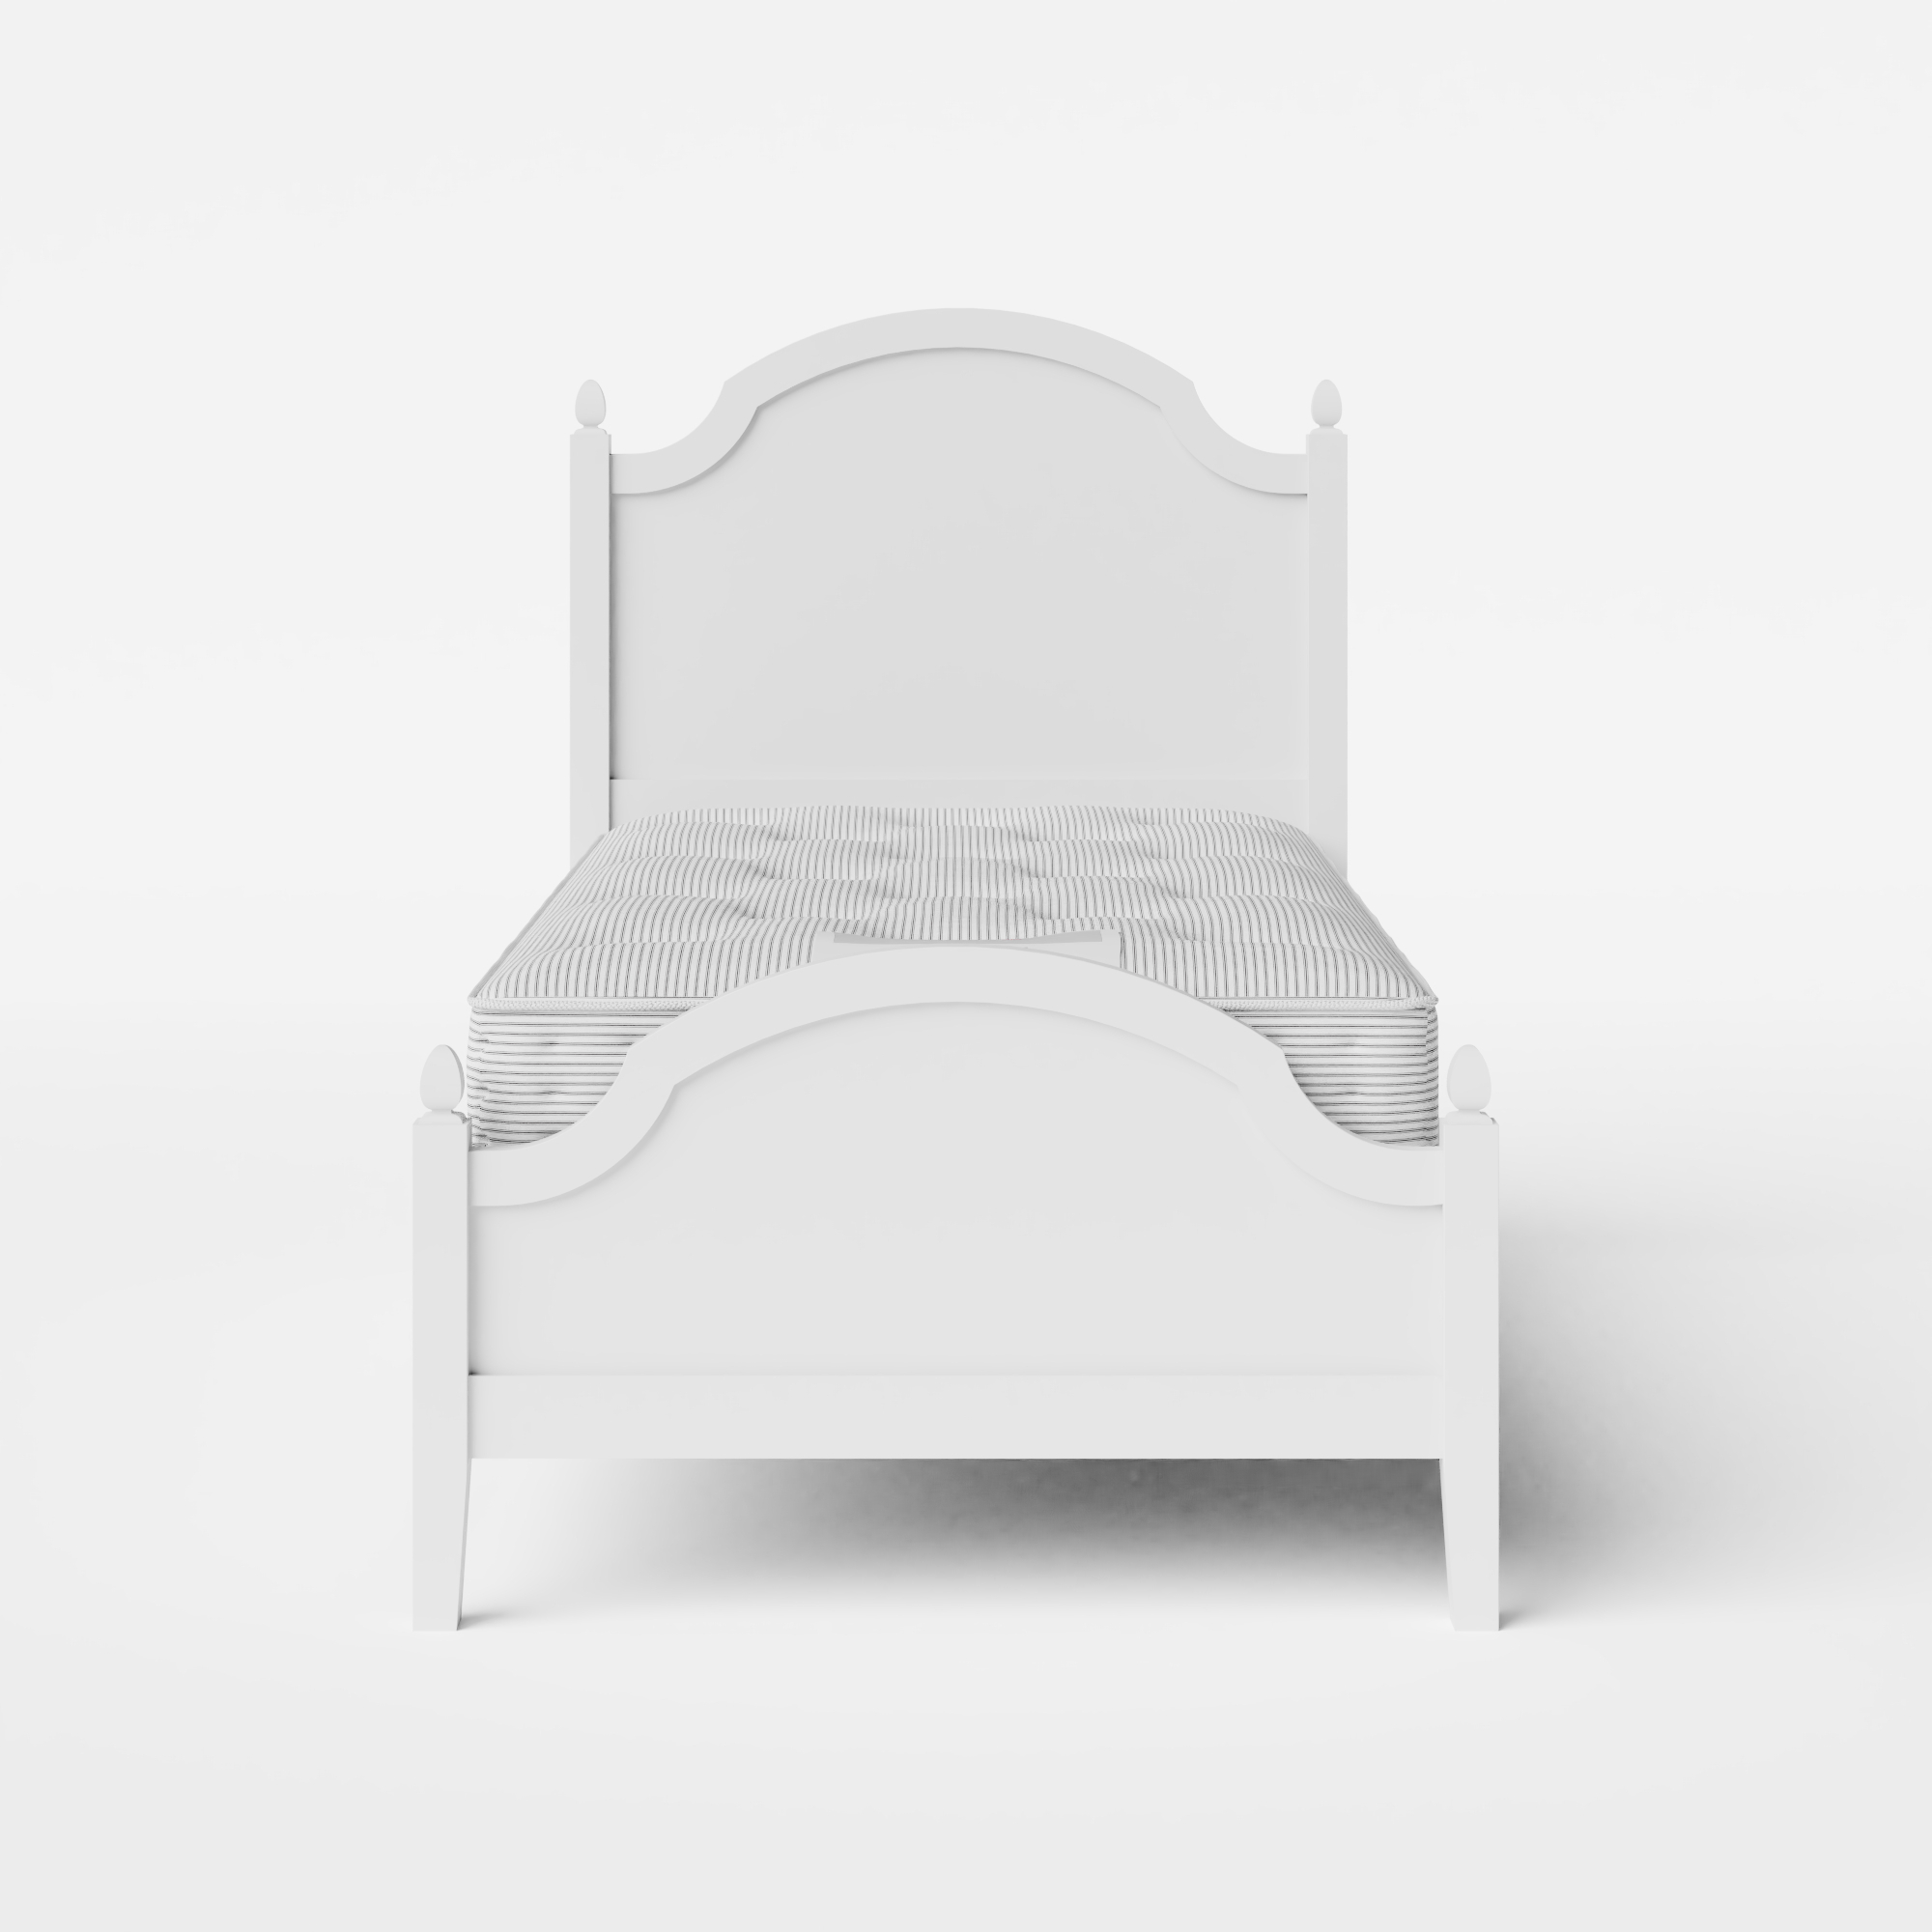 Kipling Low Footend Painted wit houten eenpersoonsbed met matras